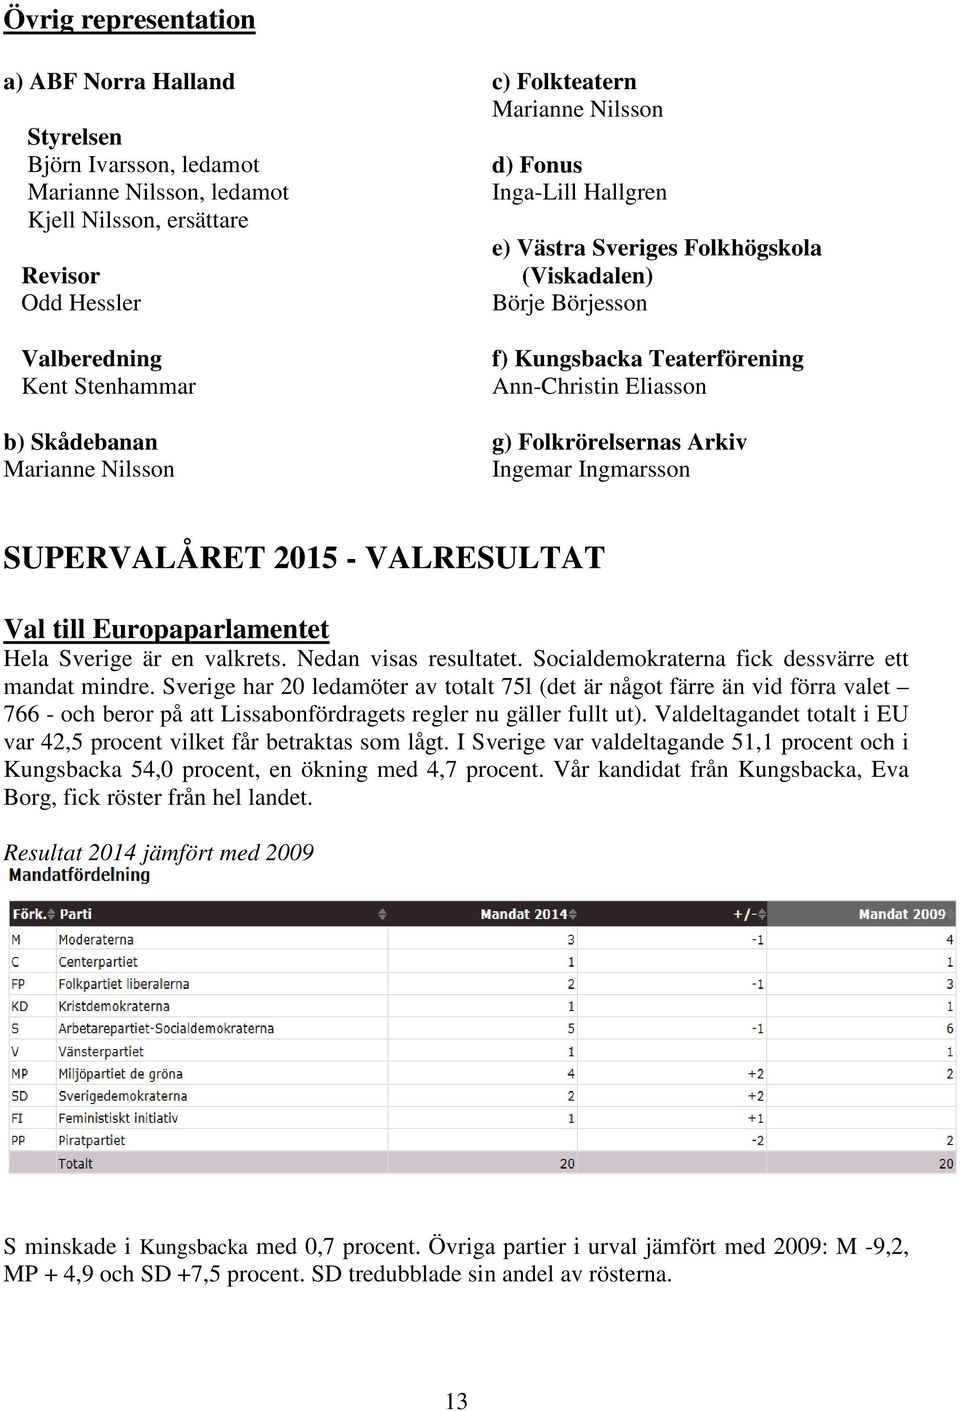 Arkiv Ingemar Ingmarsson SUPERVALÅRET 2015 - VALRESULTAT Val till Europaparlamentet Hela Sverige är en valkrets. Nedan visas resultatet. Socialdemokraterna fick dessvärre ett mandat mindre.